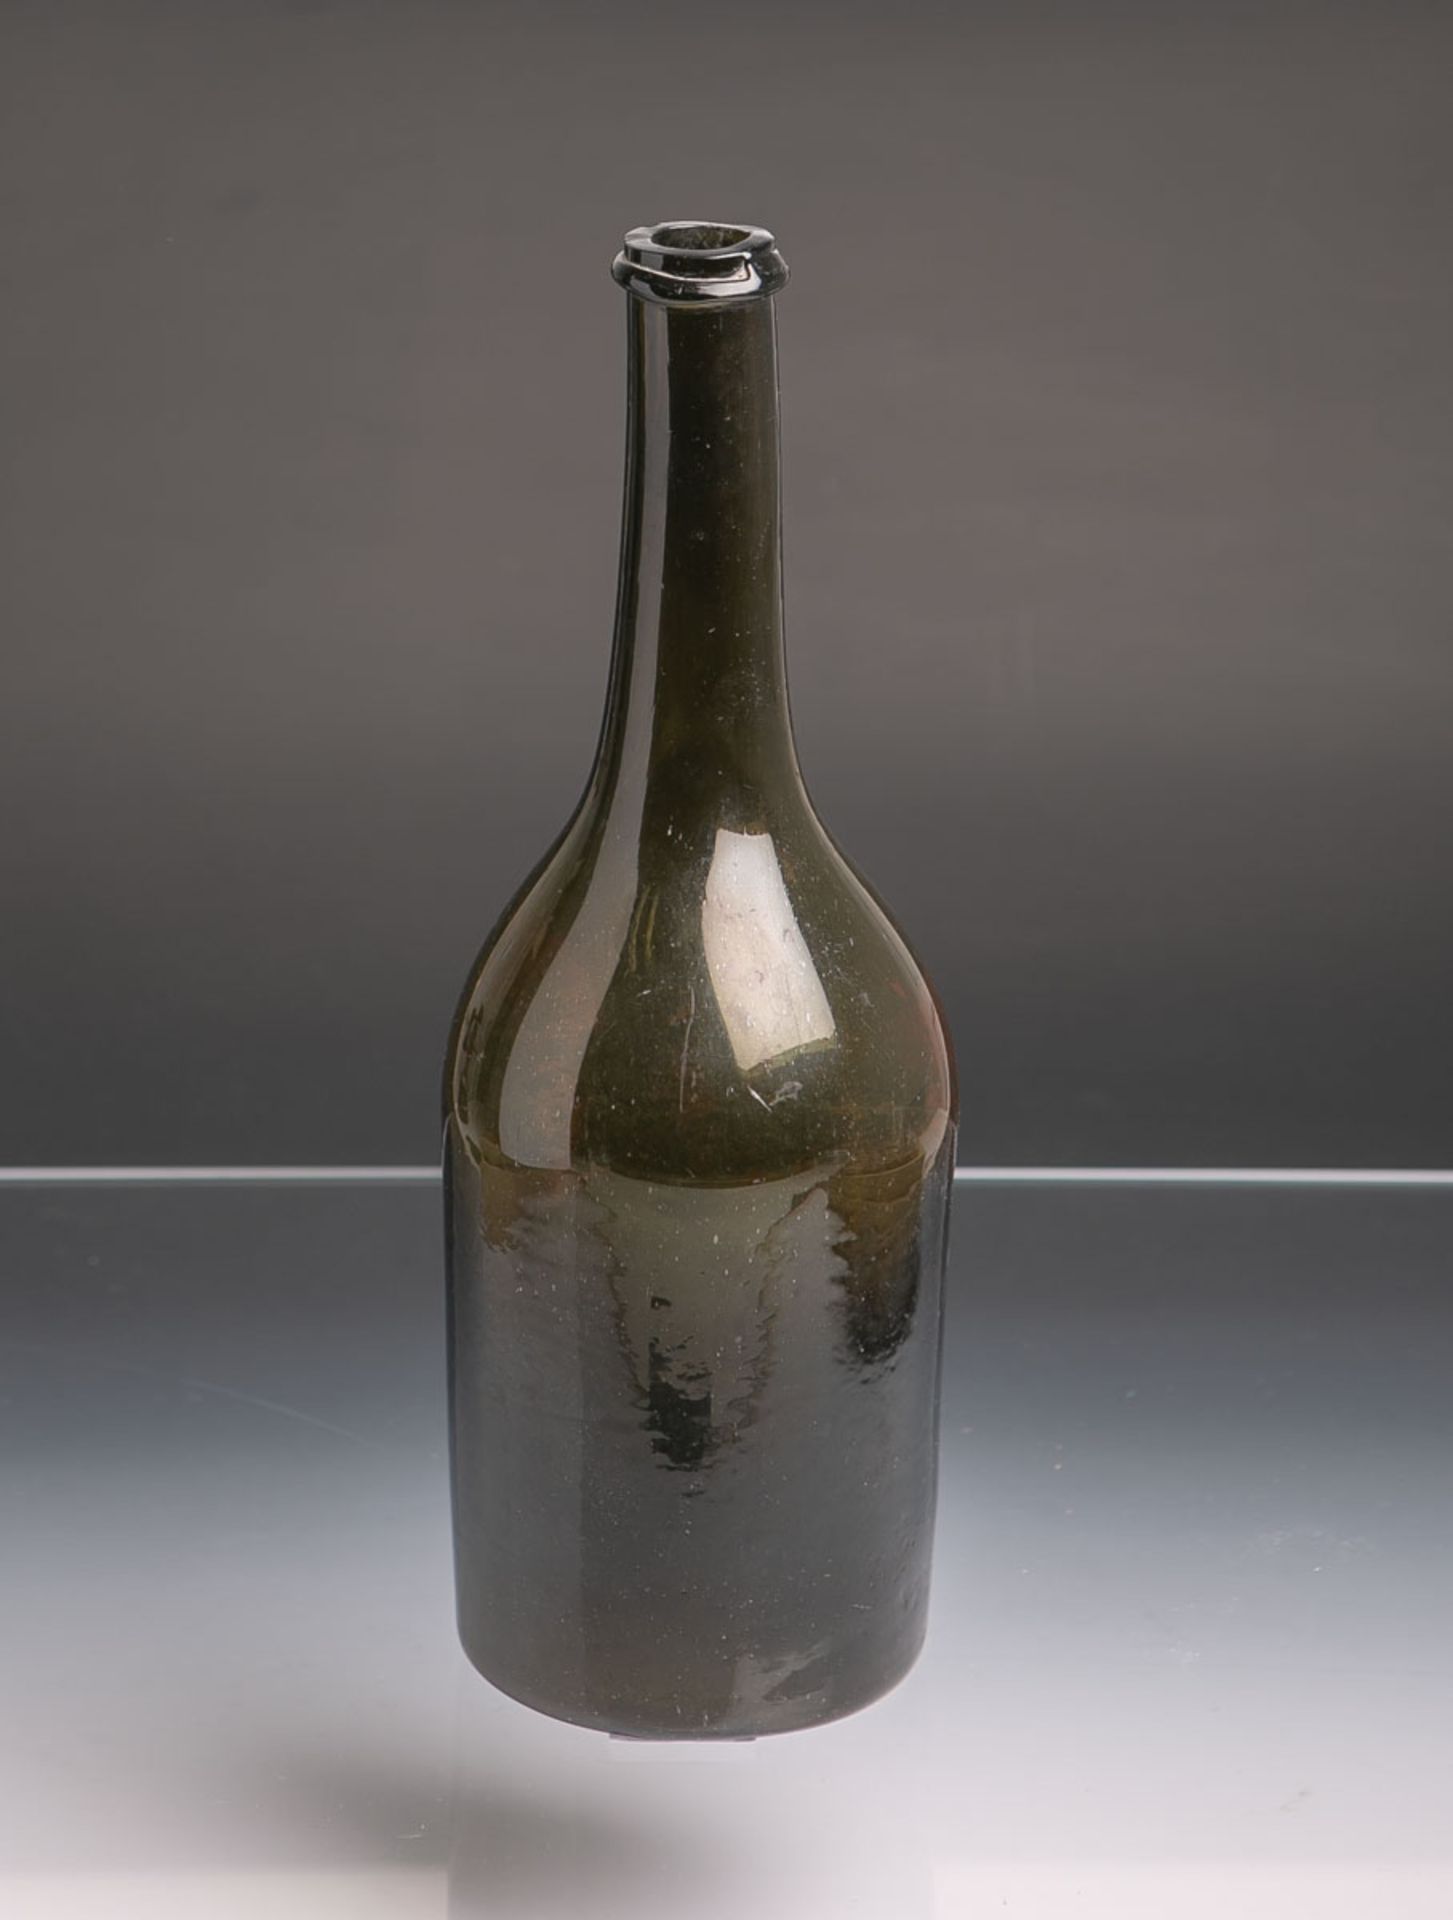 Historische Weinflasche (wohl um 1780), braun-grünes Glas m. Farbverlauf mundgeblasen,